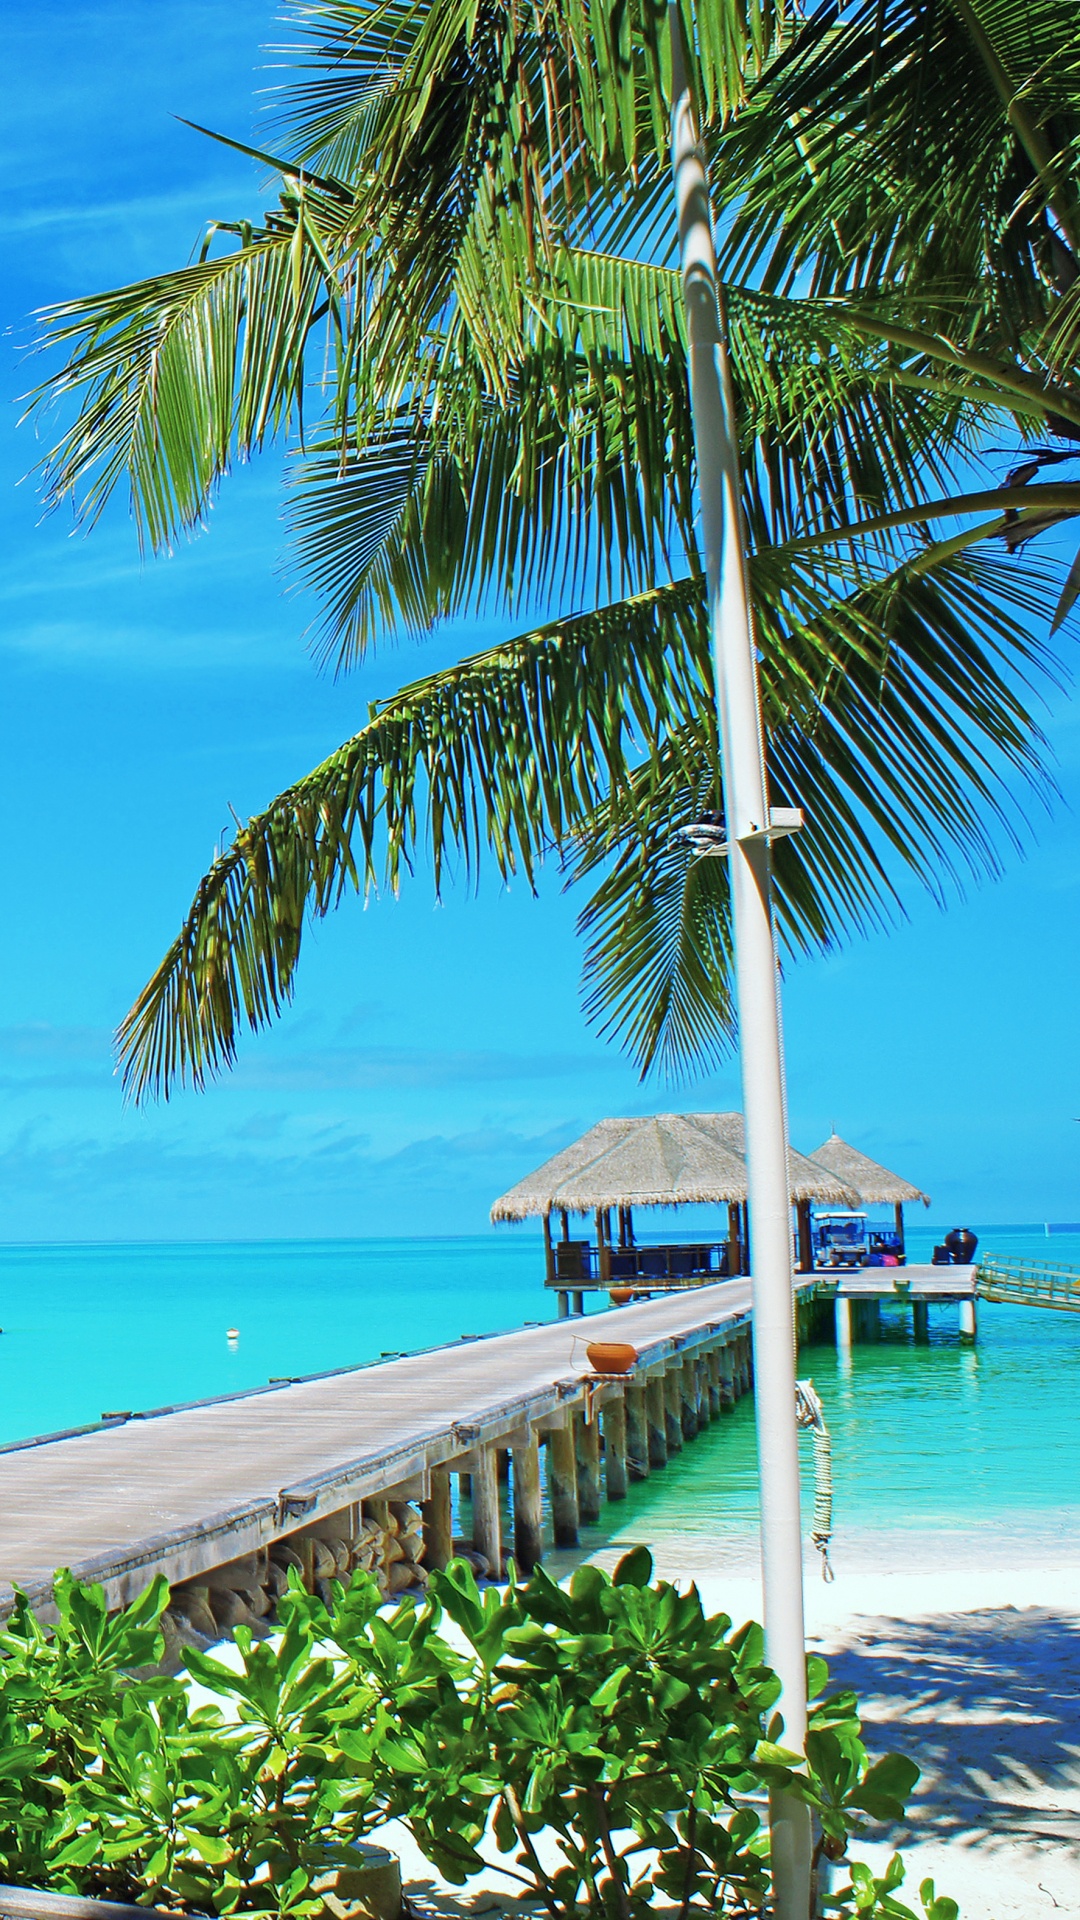 岸边, 大海, 马尔代夫, 度假村, 热带地区 壁纸 1080x1920 允许